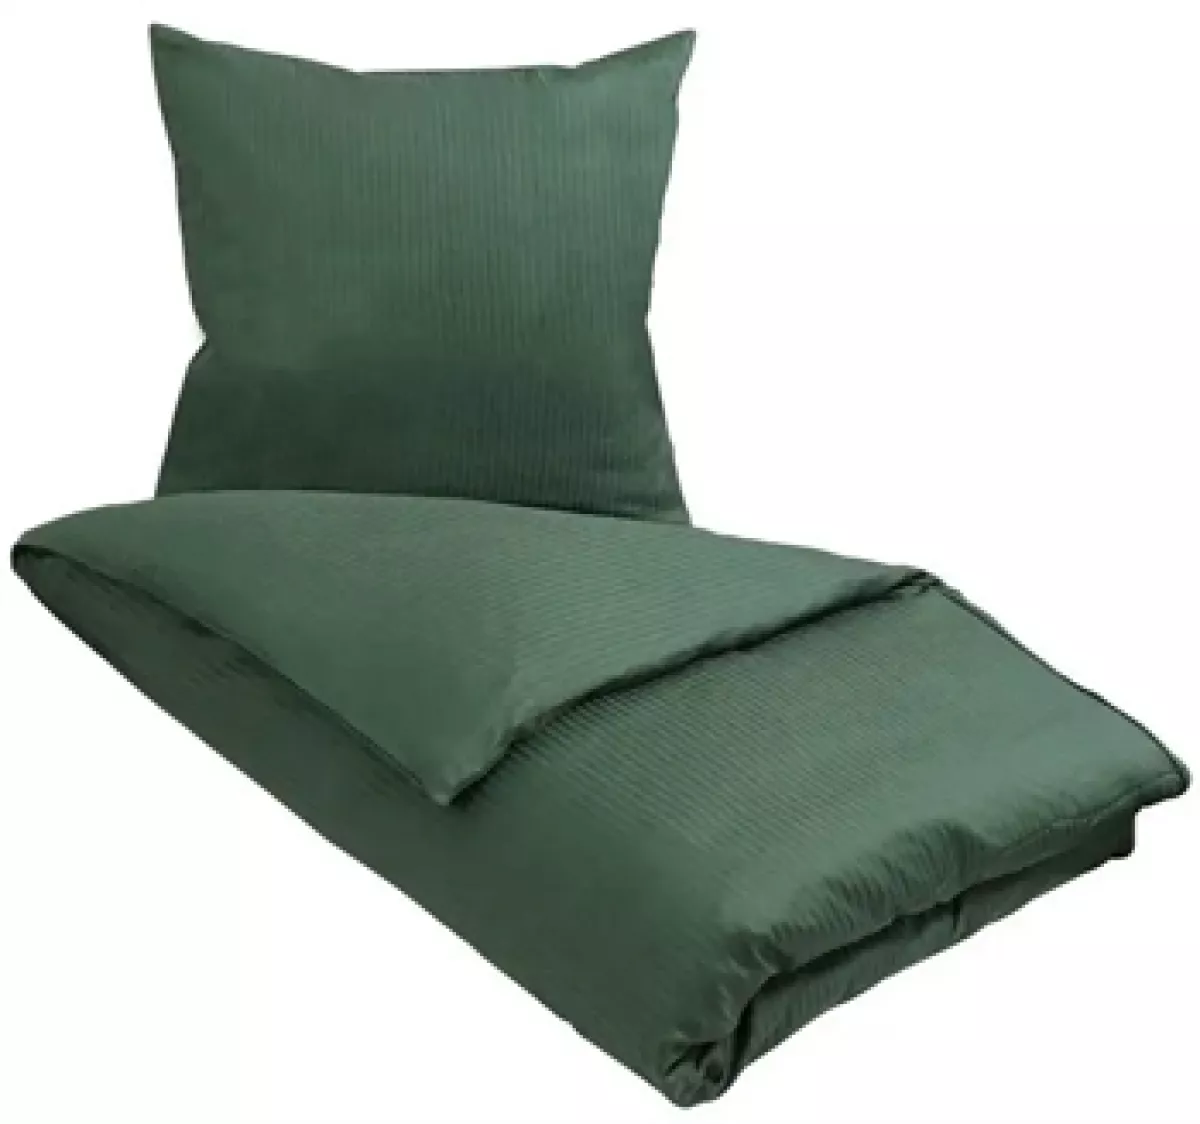 #1 - Egyptisk bomuld sengetøj - 140x200 cm - Grønt sengetøj - Ekstra blødt sengesæt fra By Borg